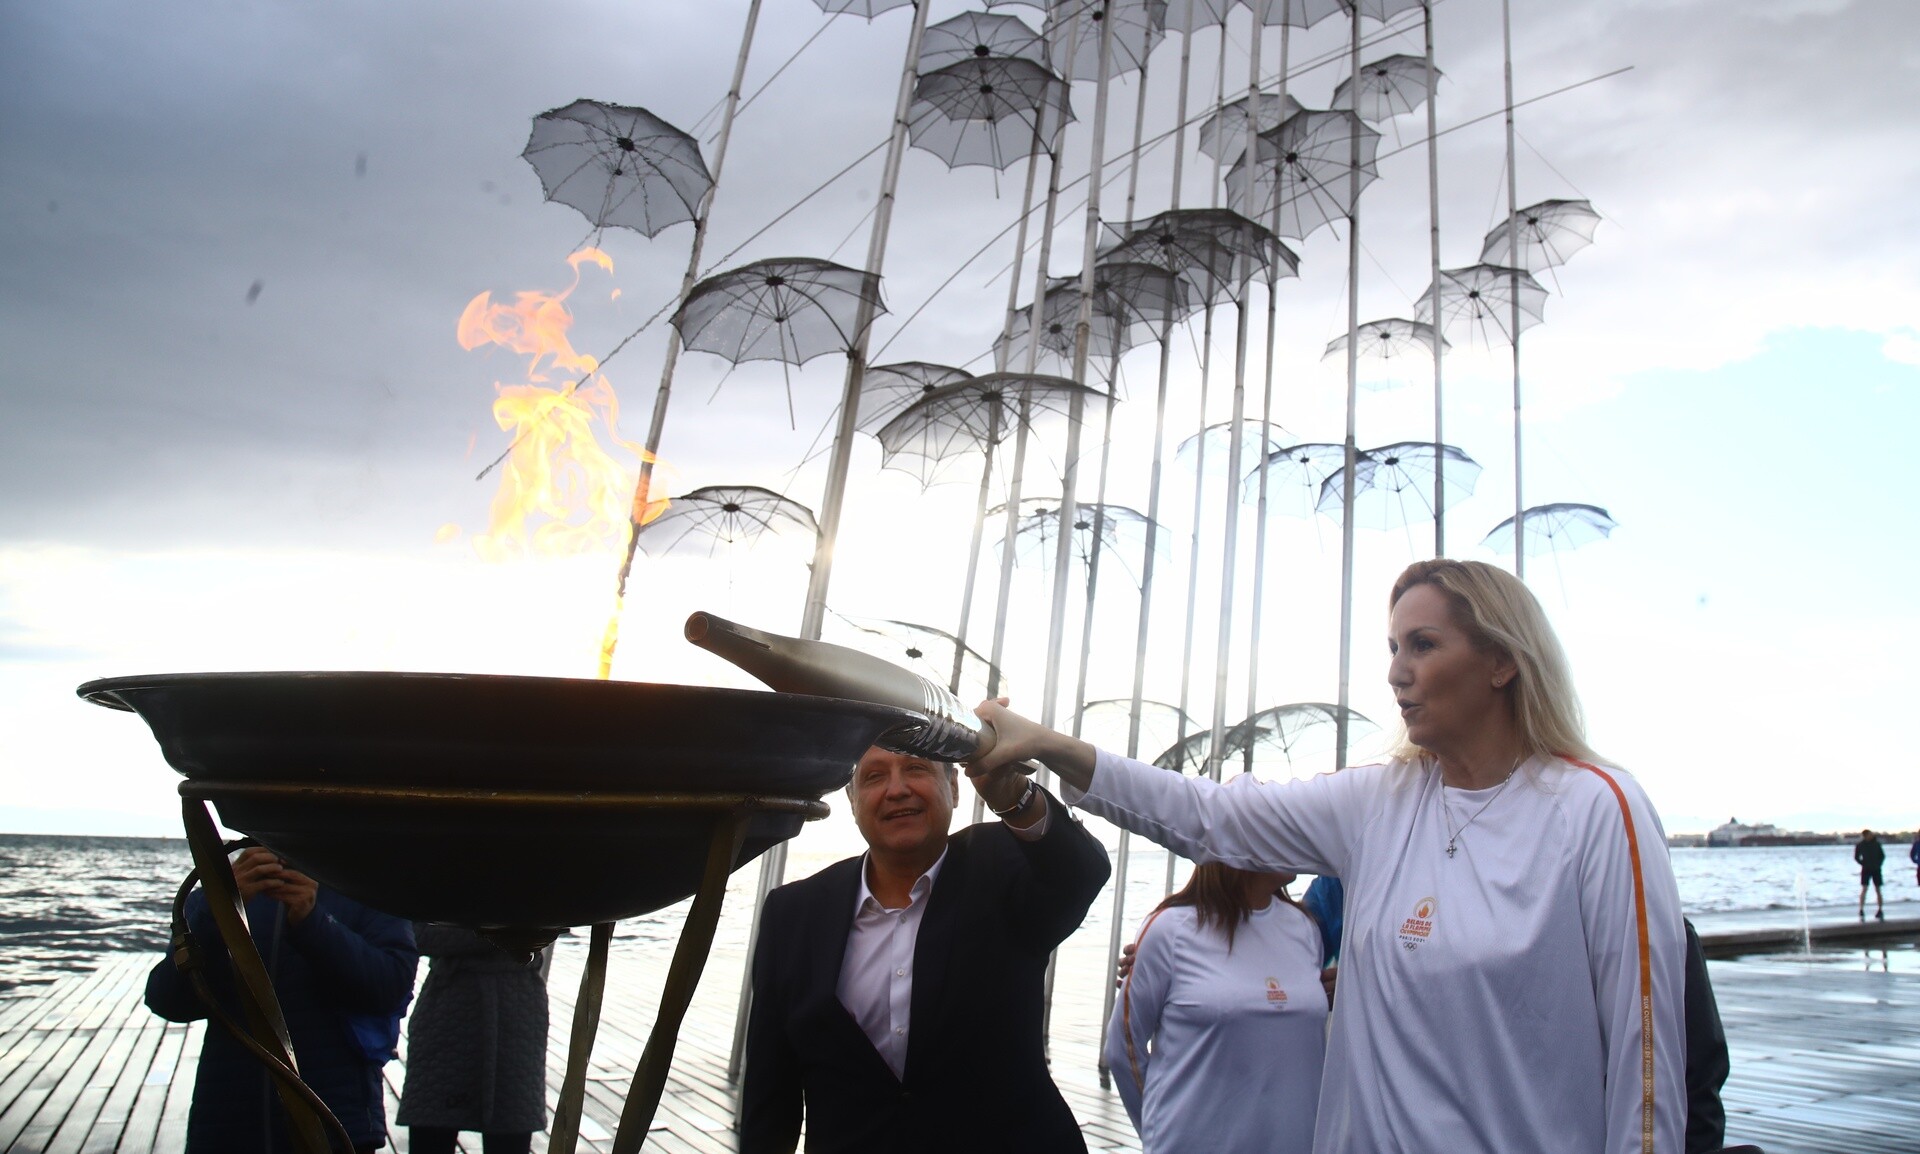 Θεσσαλονίκη: Εντυπωσιακές εικόνες από τη στιγμή που η Ολυμπιακή Φλόγα ανάβει στις Ομπρέλες